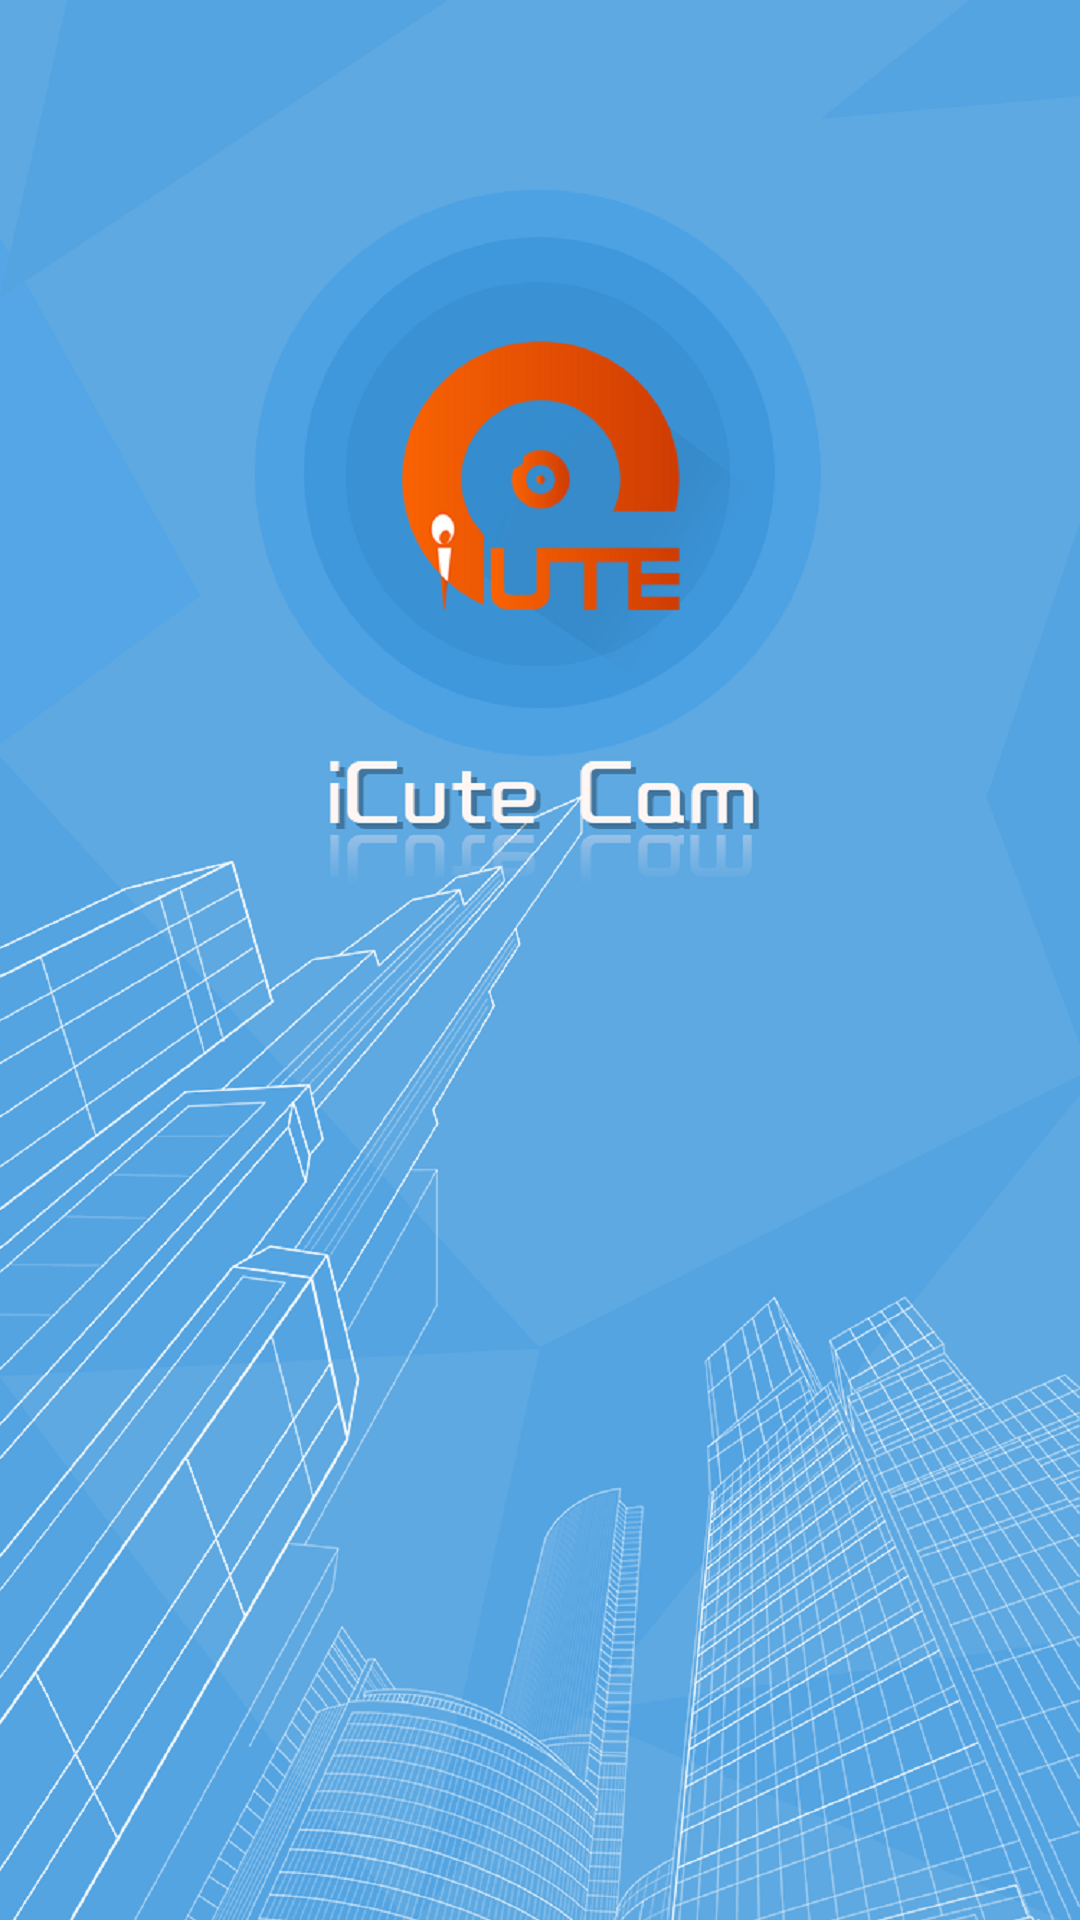 iCute Cam南京我想开发一个app